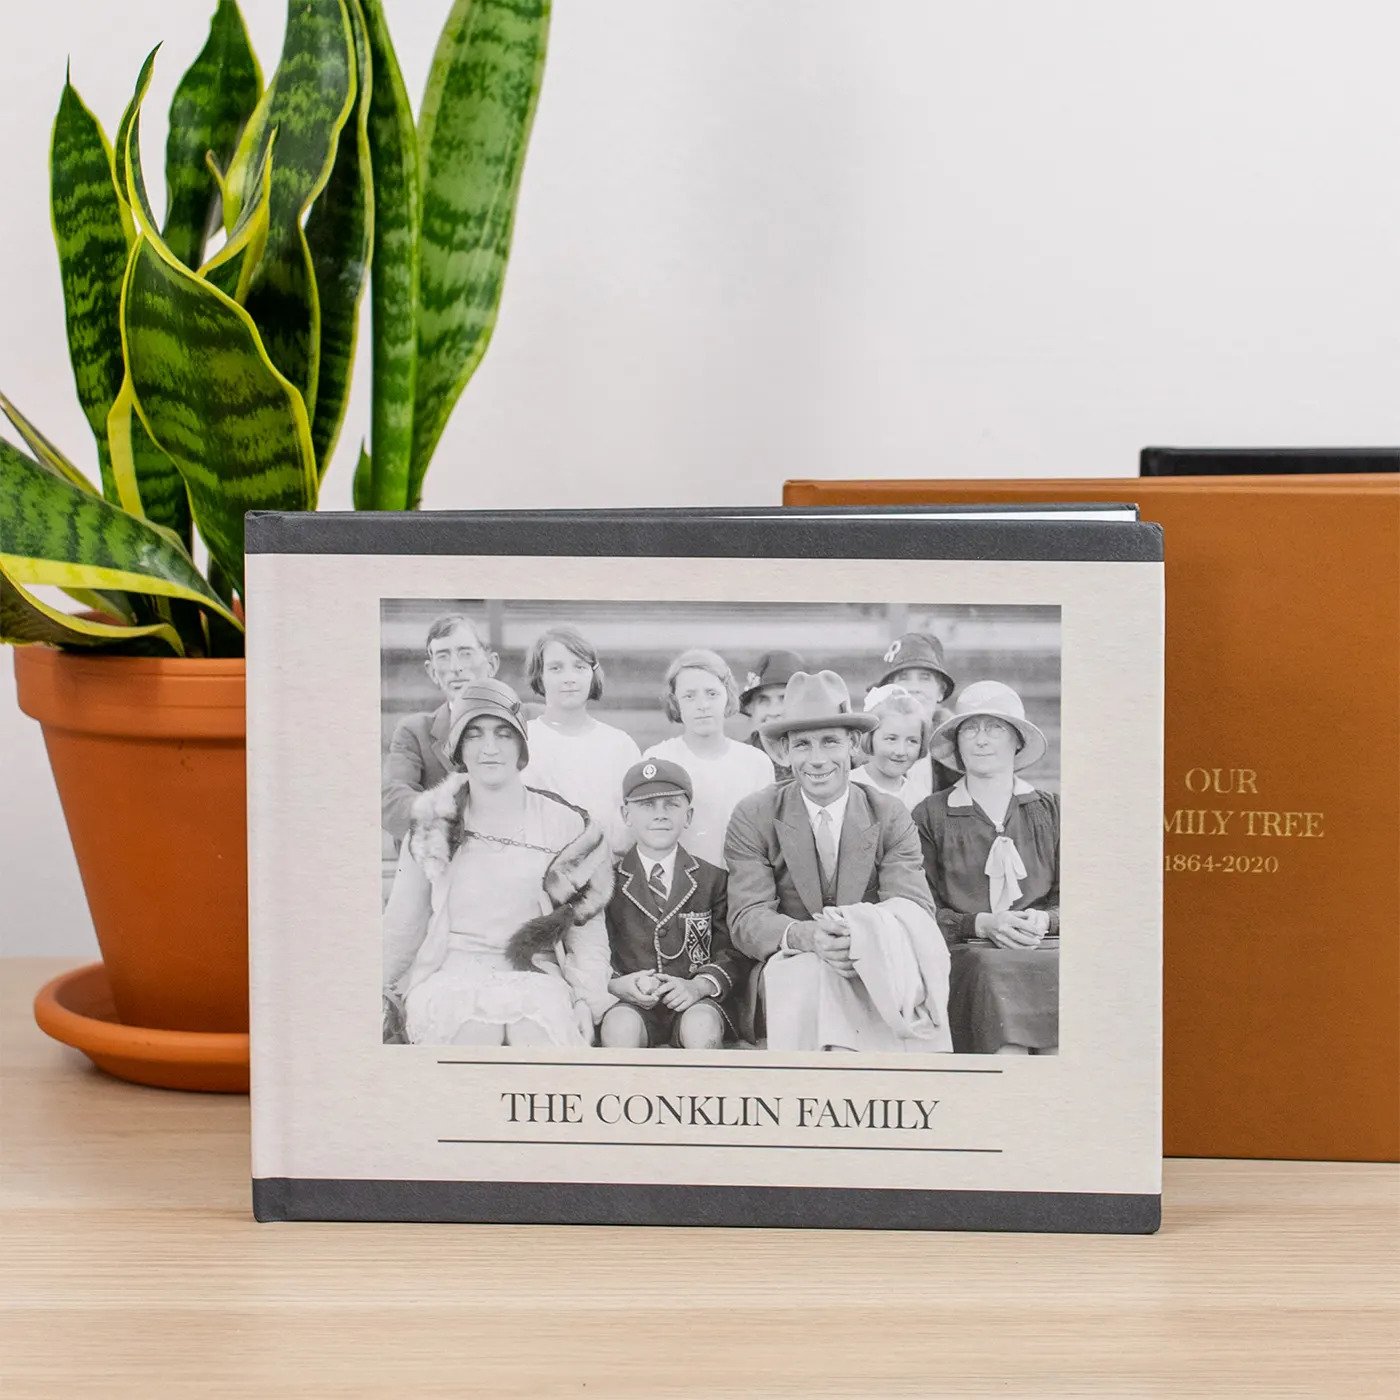 Family History Book